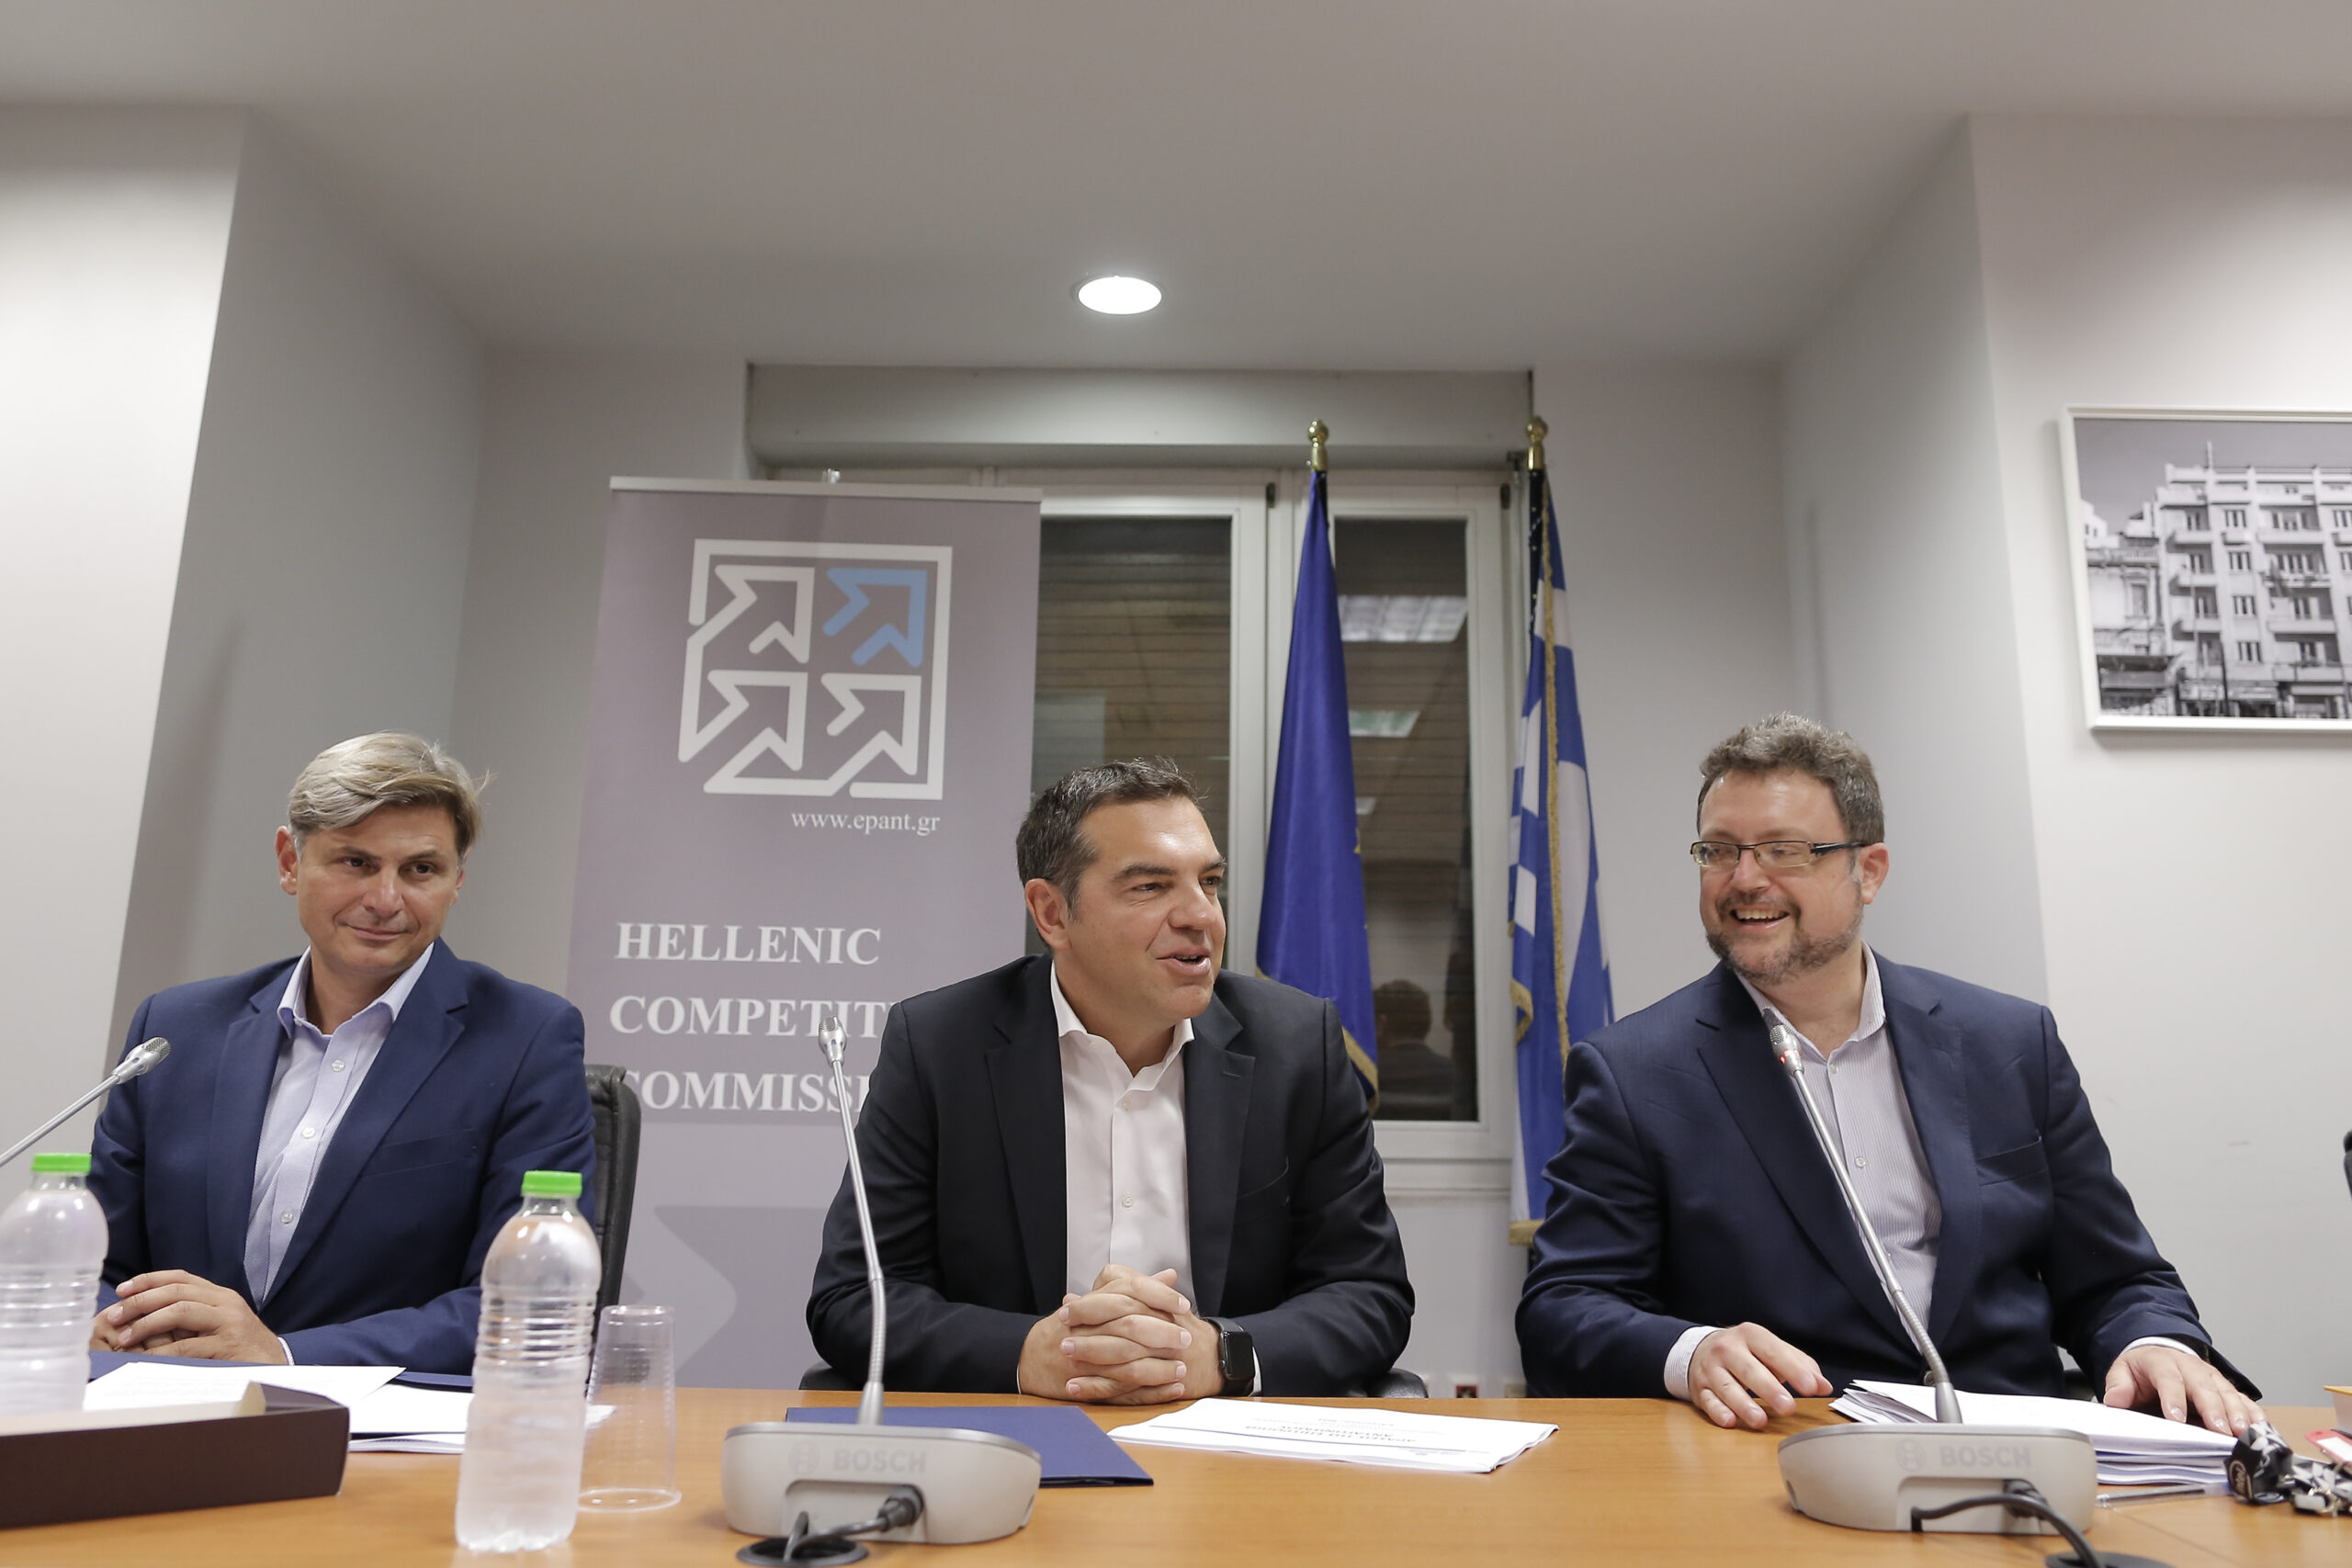 Αλ. Τσίπρας: «Η Ελλάδα είναι πρωταθλήτρια στην ακρίβεια και αυτό δεν είναι τυχαίο»